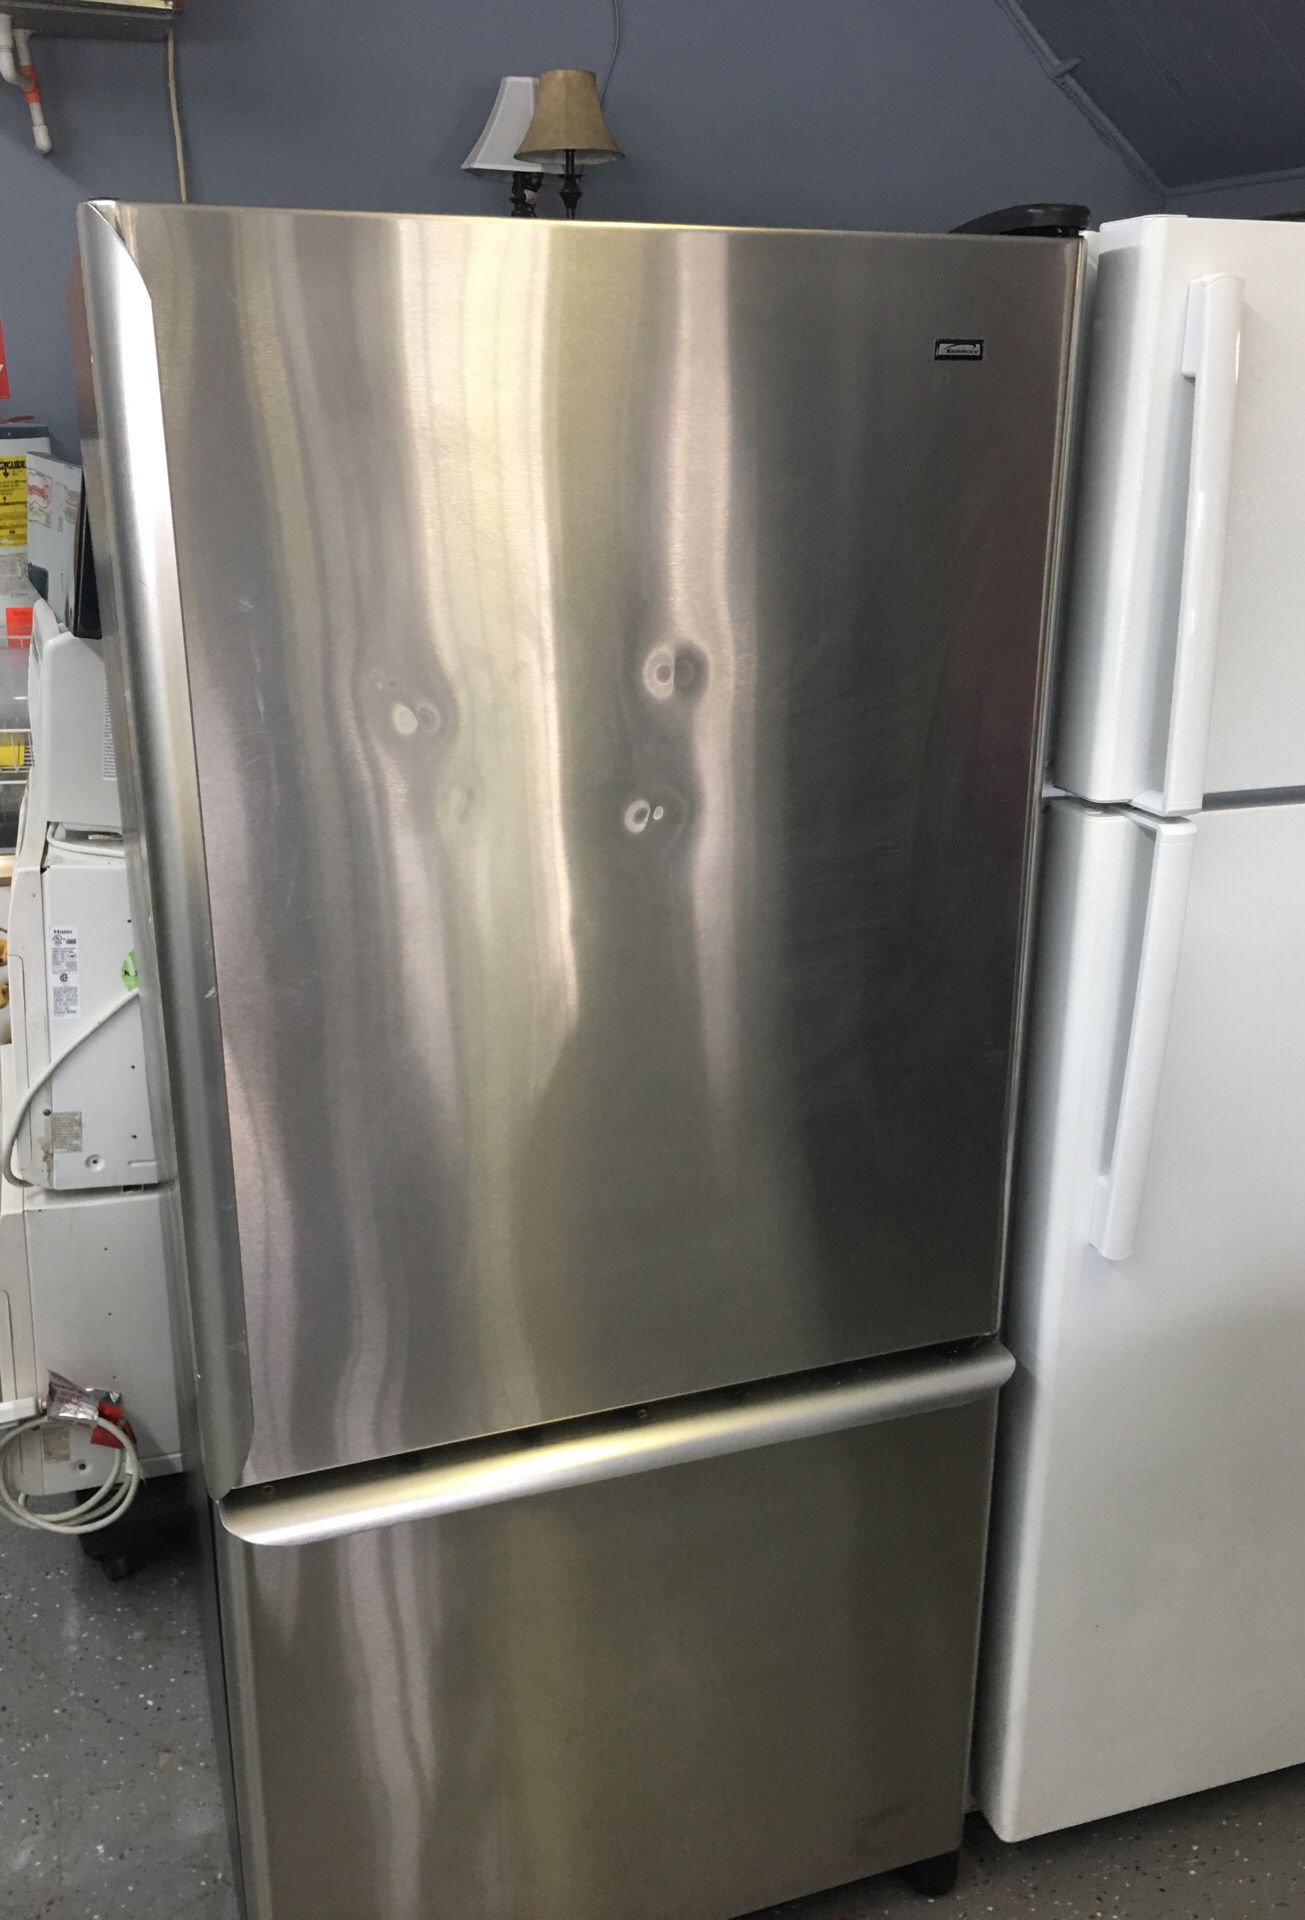 Kenmore refrigerator-30 day warranty